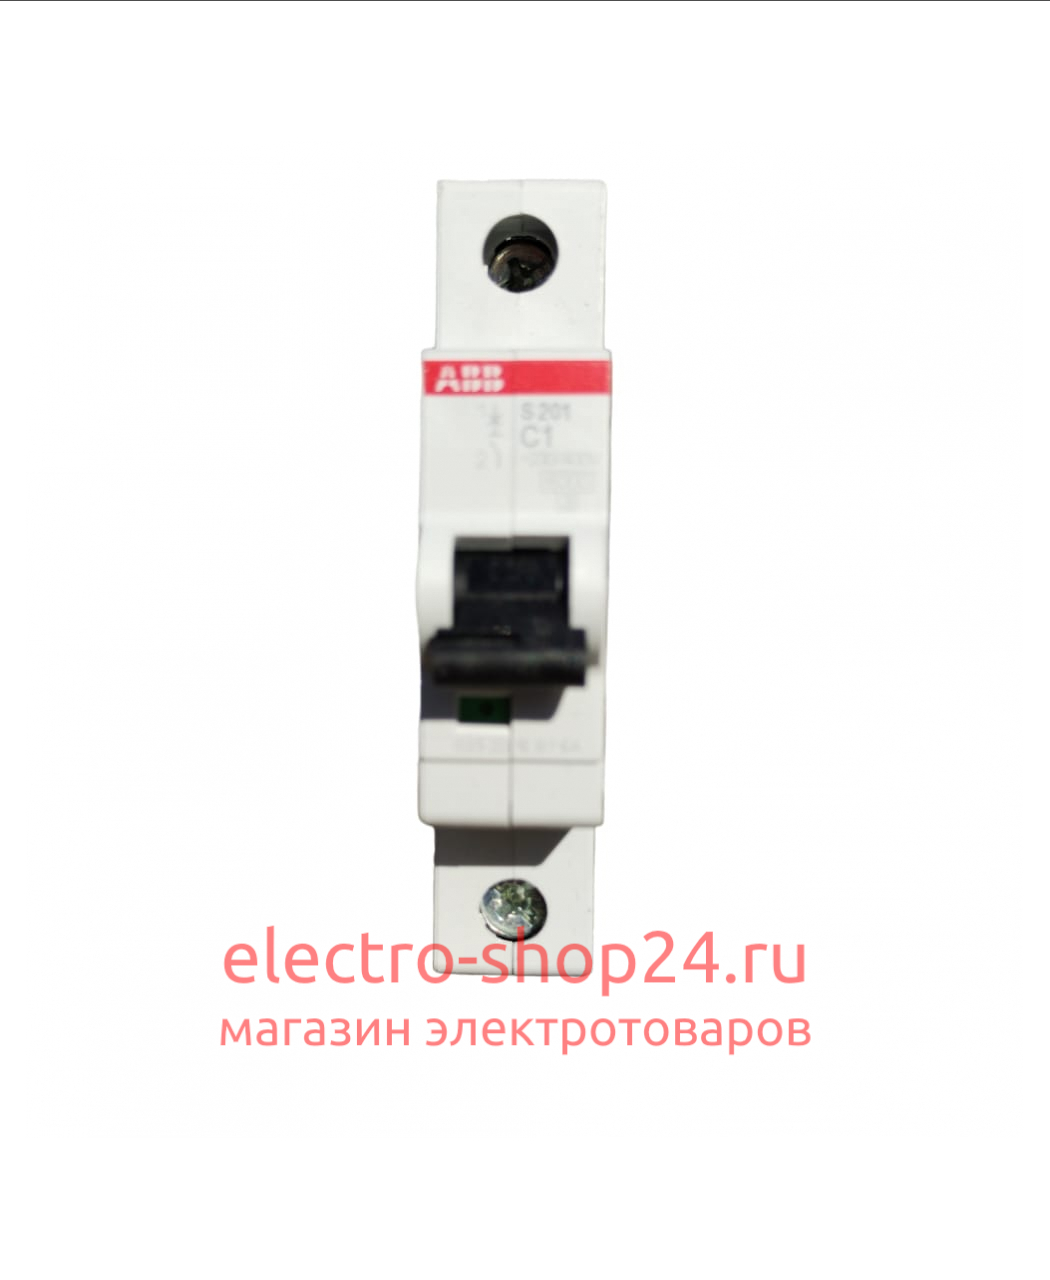 S201 C1 Автоматический выключатель 1-полюсный 1А 6кА (хар-ка C) ABB 2CDS251001R0014 2CDS251001R0014 - магазин электротехники Electroshop